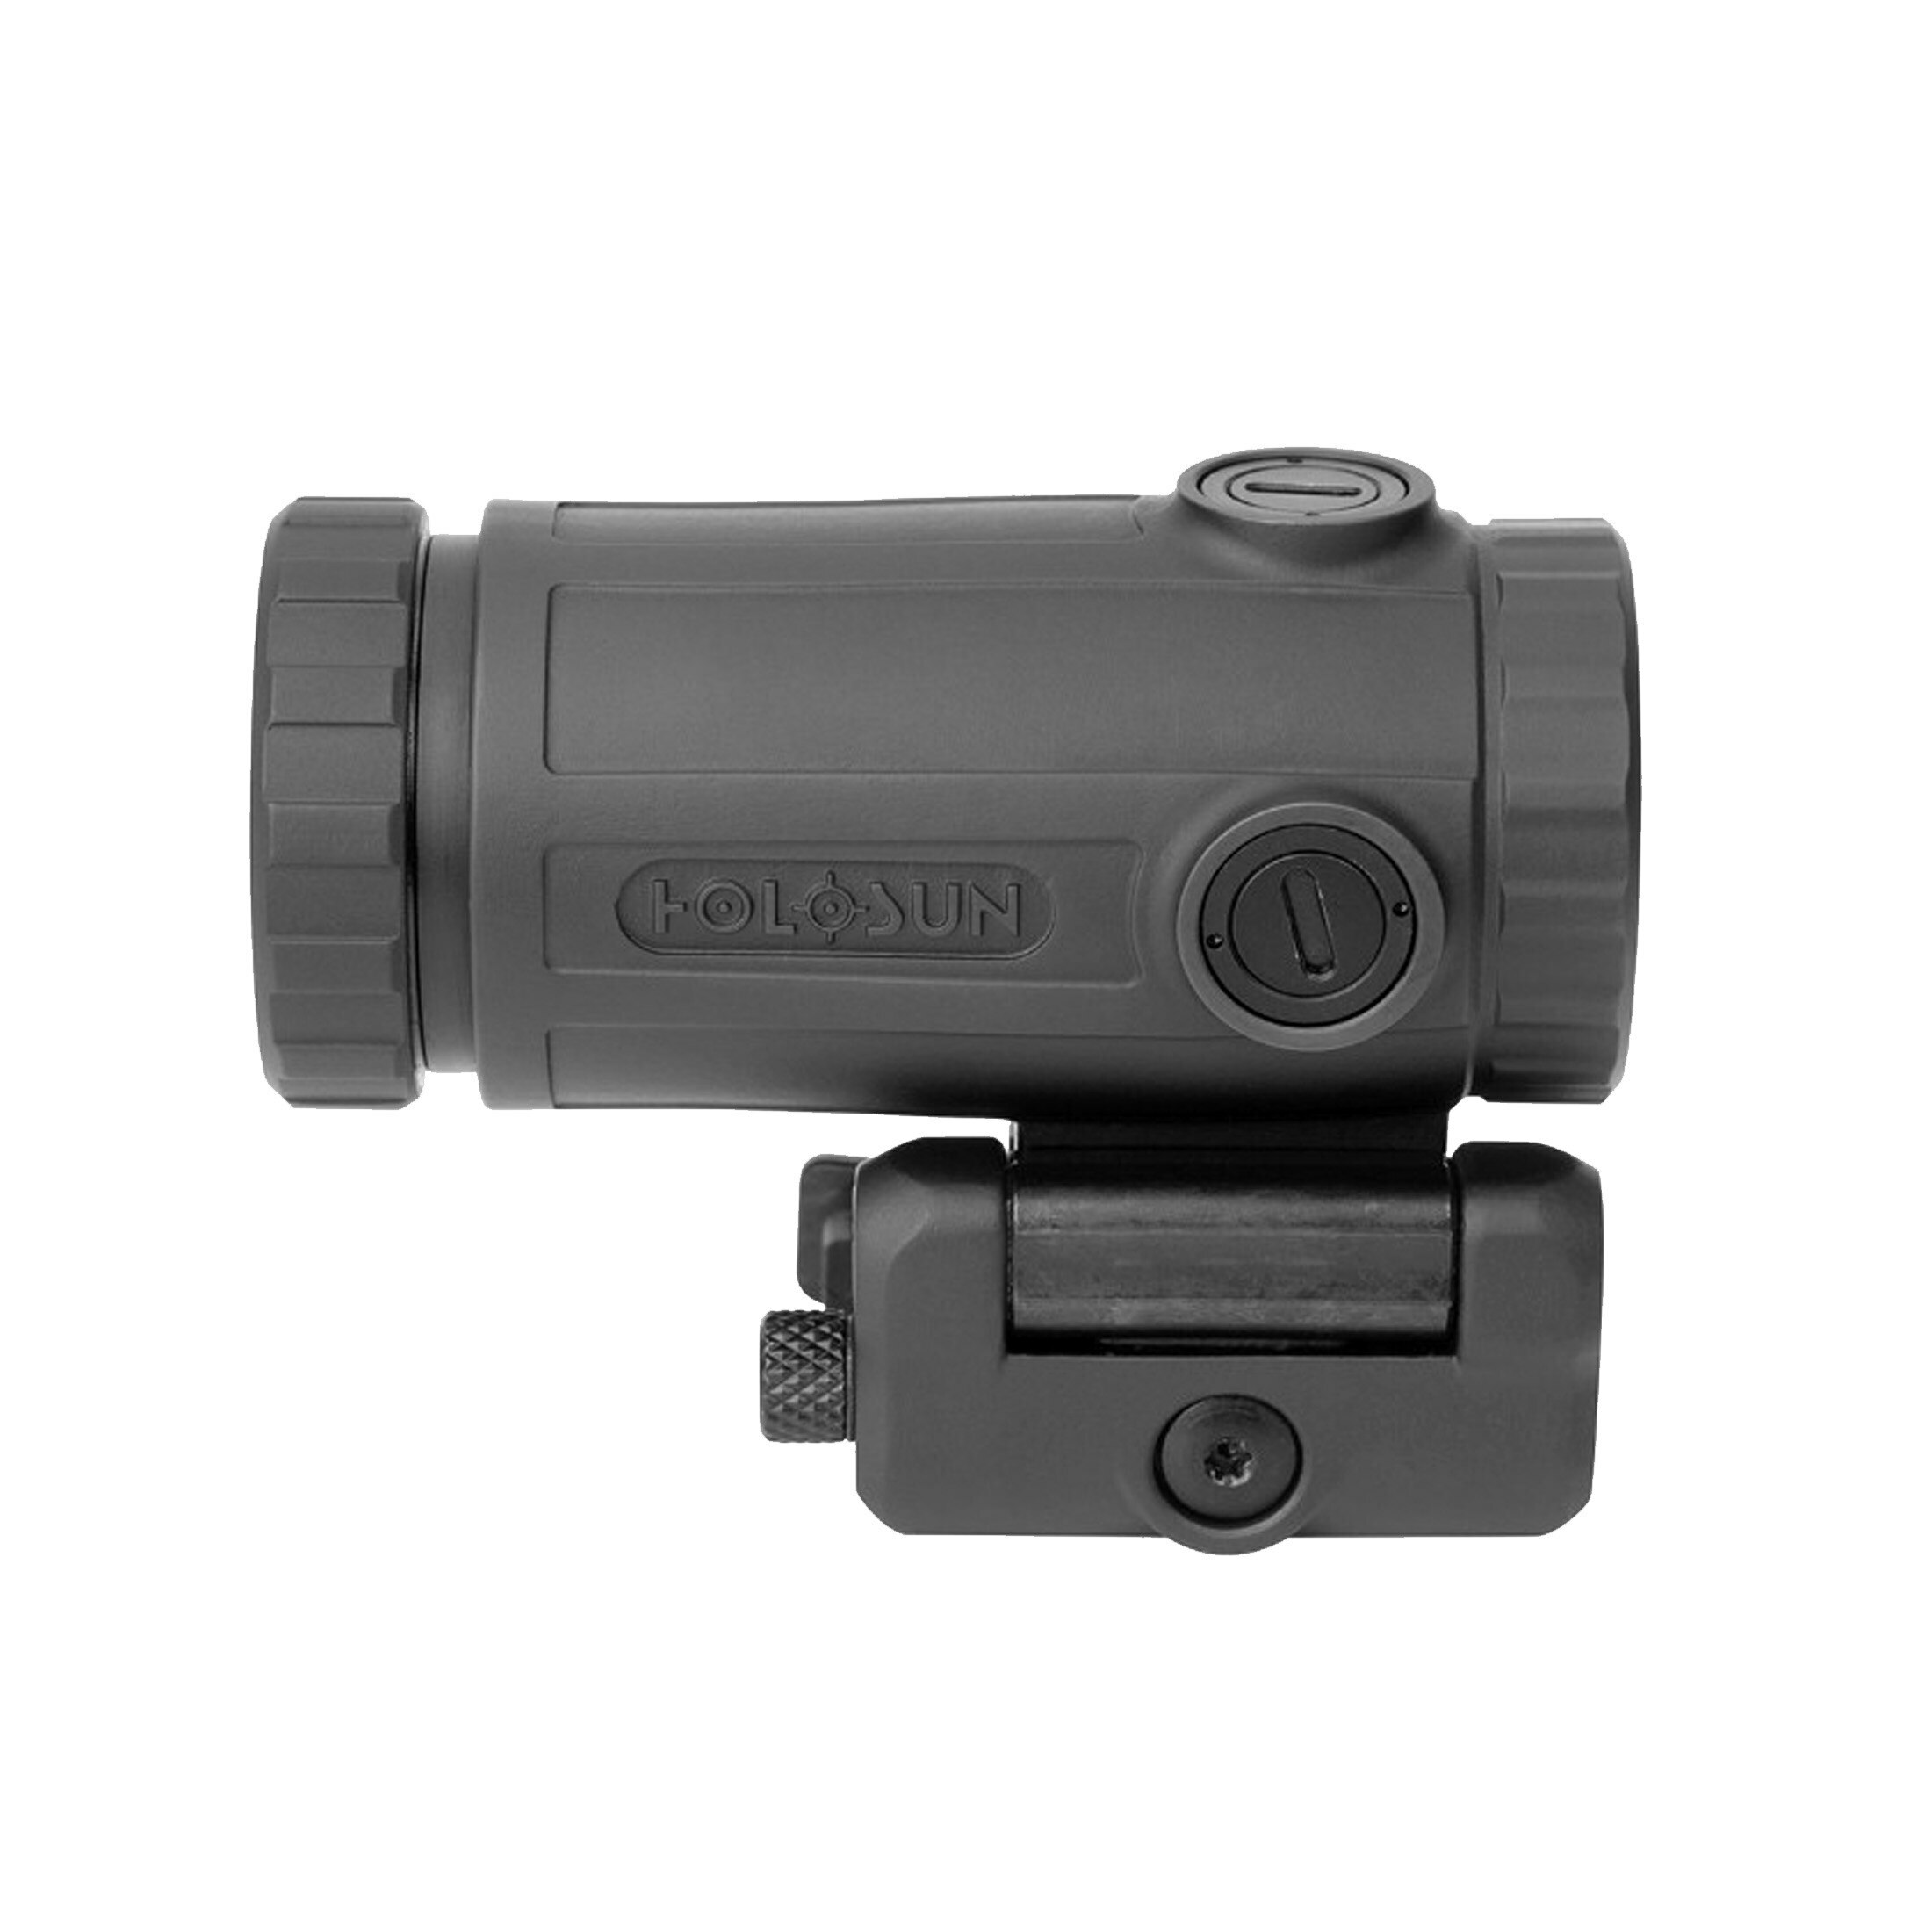 Holosun Magnifier HM3X-TITAN, 3-kertainen suurennus, musta, Picatinny, metsästys, urheiluampuminen,…